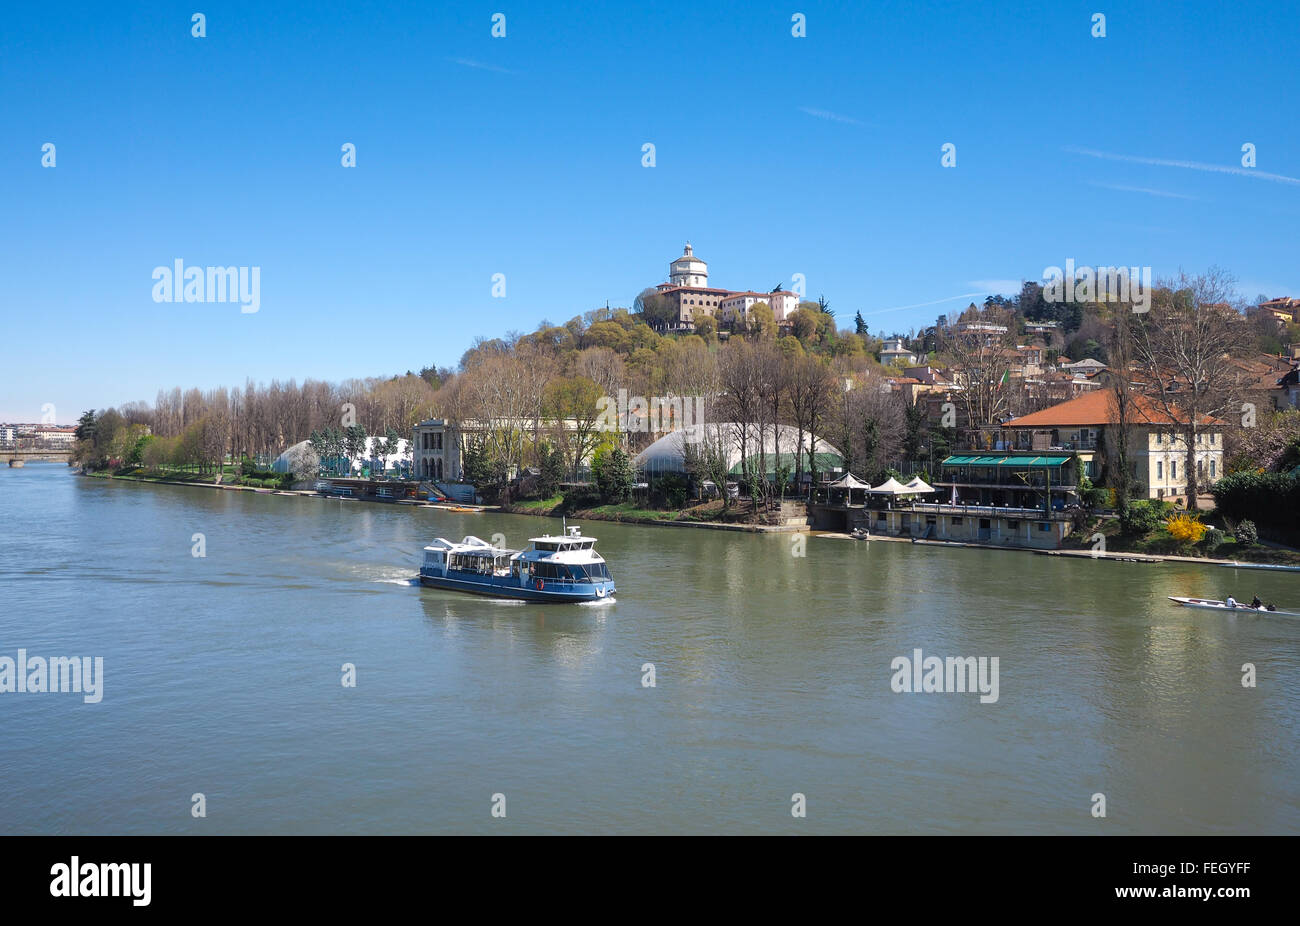 La barca turistica sul fiume Po in Torino Piemonte (Italia settentrionale), con il Monte dei Cappuccini chiesa in background. Foto Stock